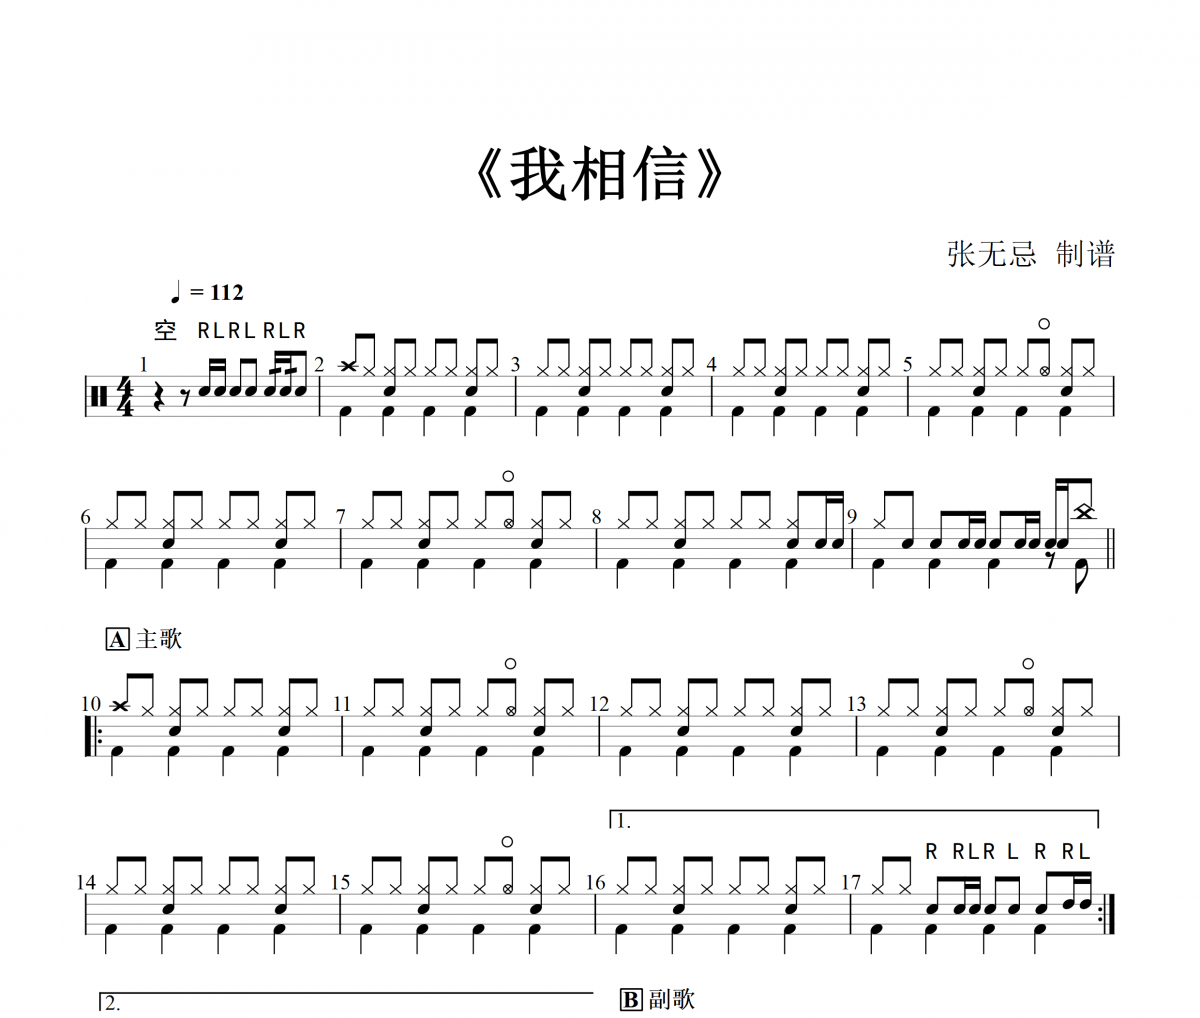 杨培安《我相信》高清吉他弹唱谱C转D调完美版原版编配+视频示范 | 极易音乐